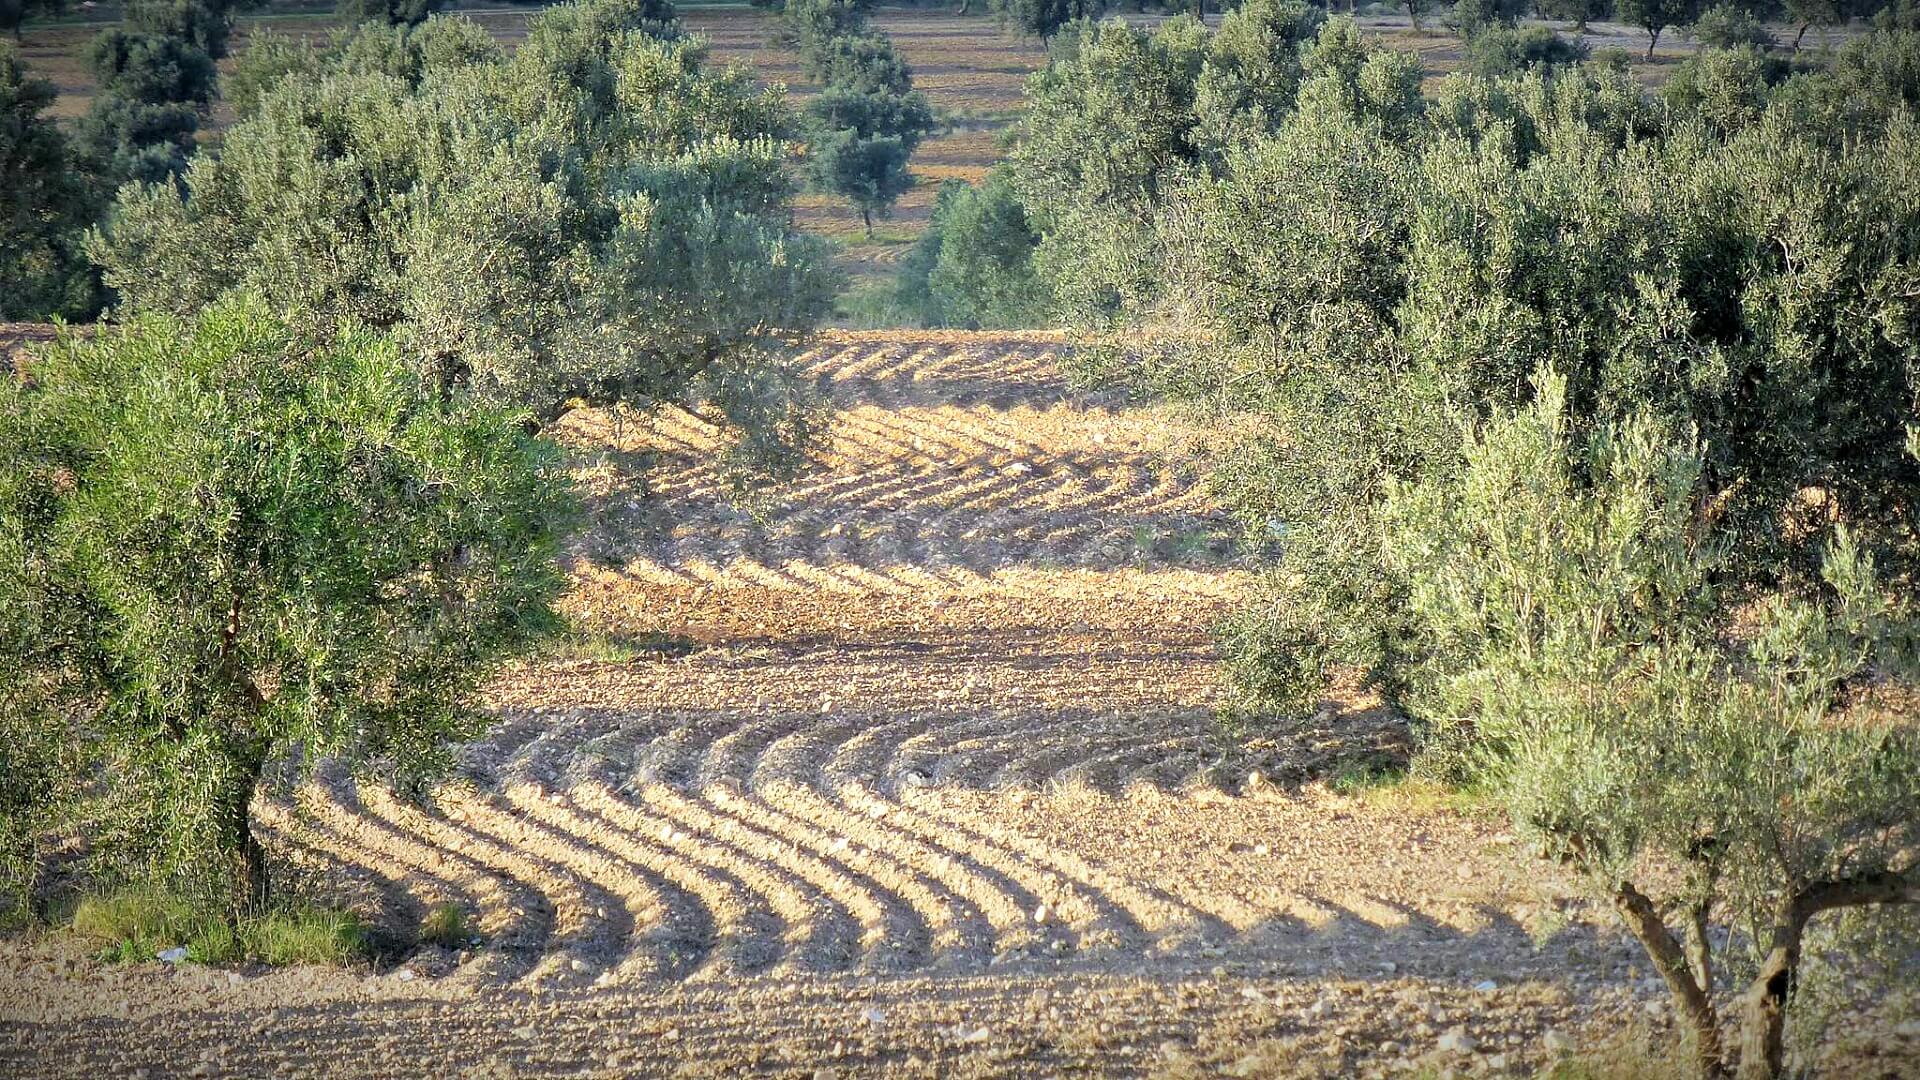 Tunisia Olive Oil Field